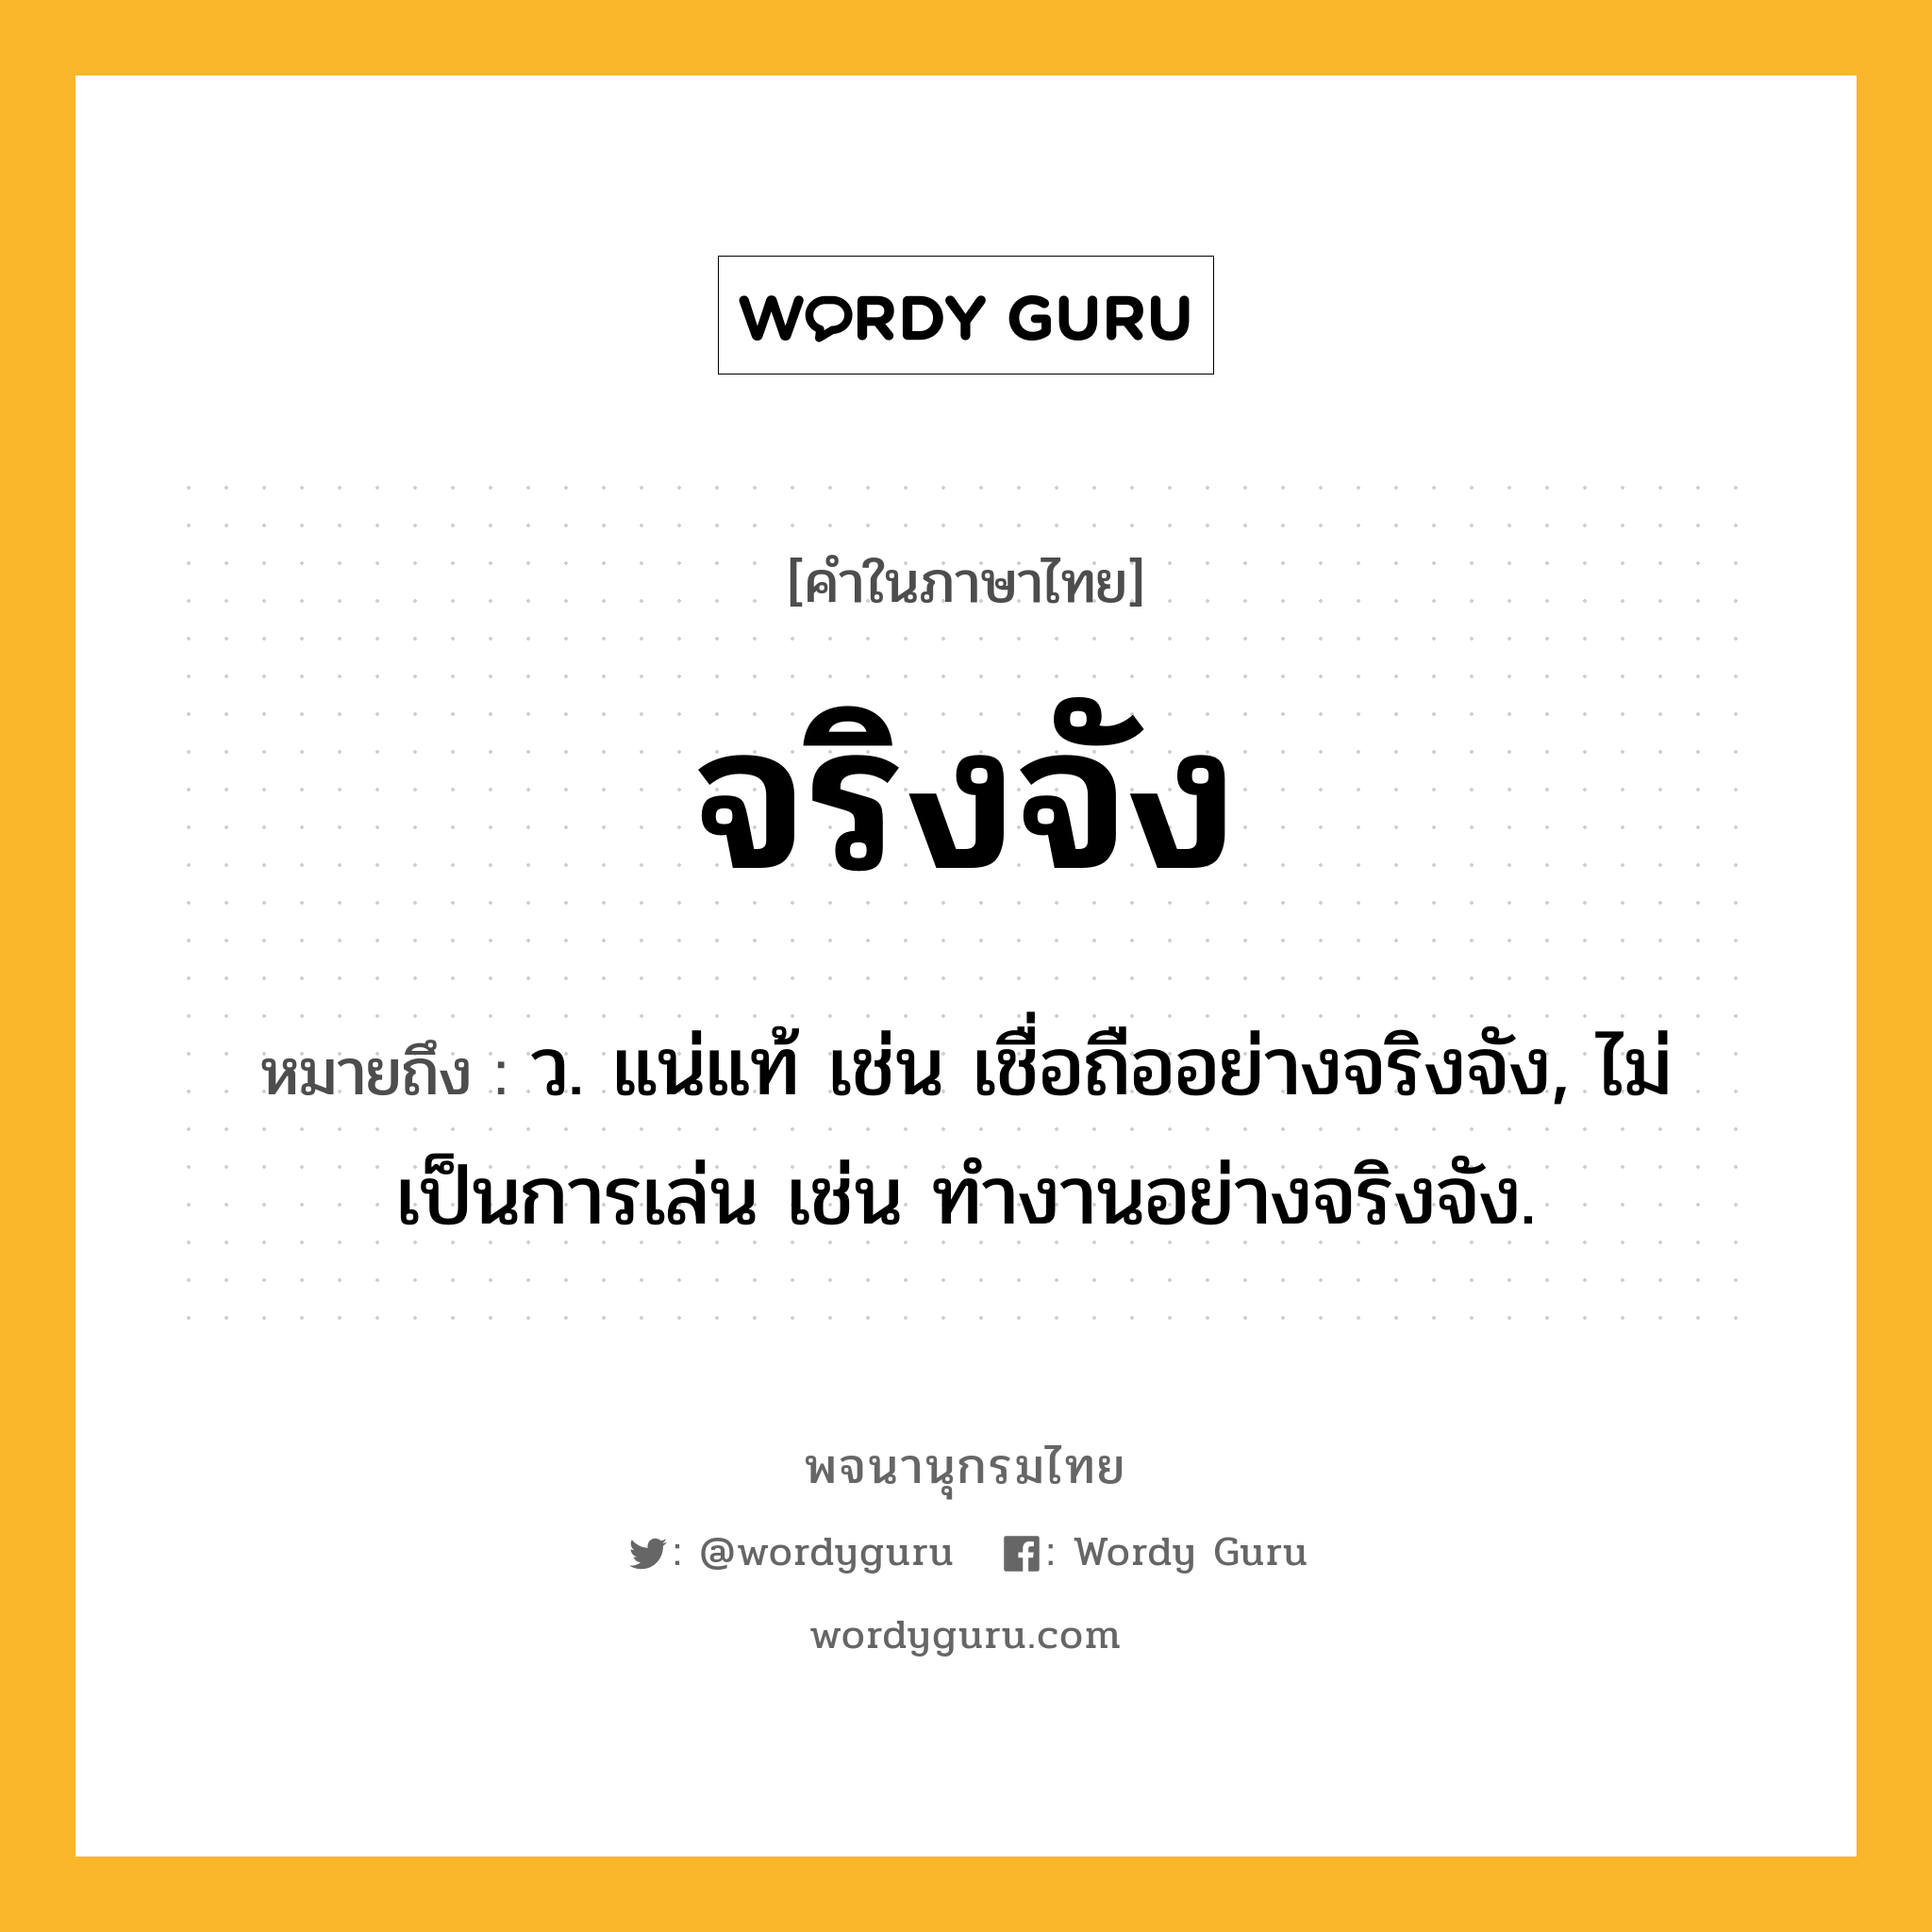 จริงจัง หมายถึงอะไร?, คำในภาษาไทย จริงจัง หมายถึง ว. แน่แท้ เช่น เชื่อถืออย่างจริงจัง, ไม่เป็นการเล่น เช่น ทํางานอย่างจริงจัง.